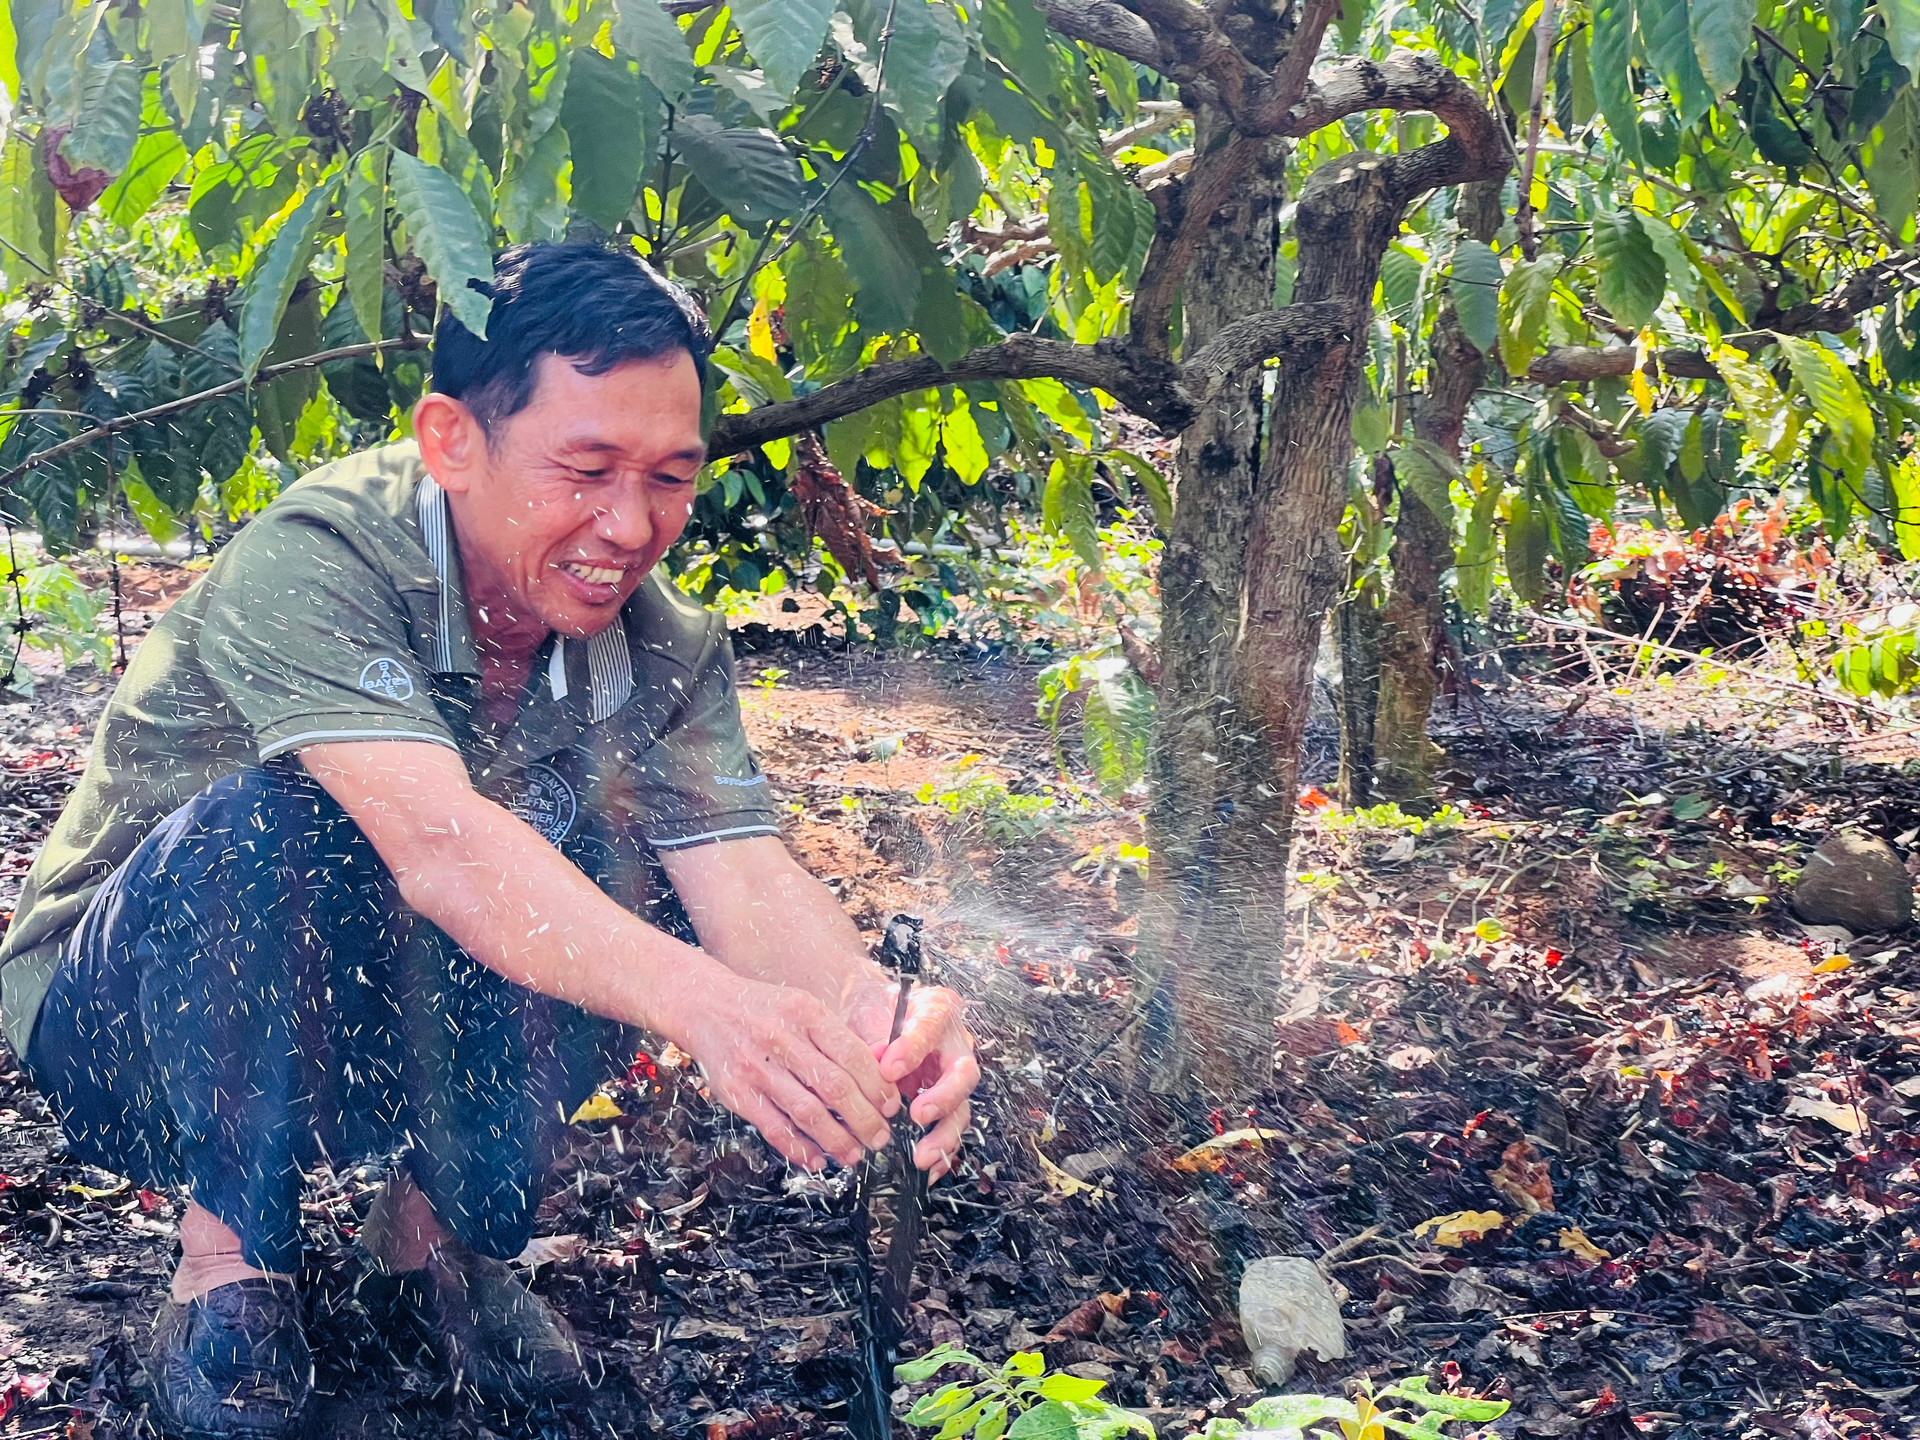 Nhiều  hộ dân ở huyện Cư M' gar, đang áp hệ thống tưới nhỏ giọt để tiết kiệm nước.